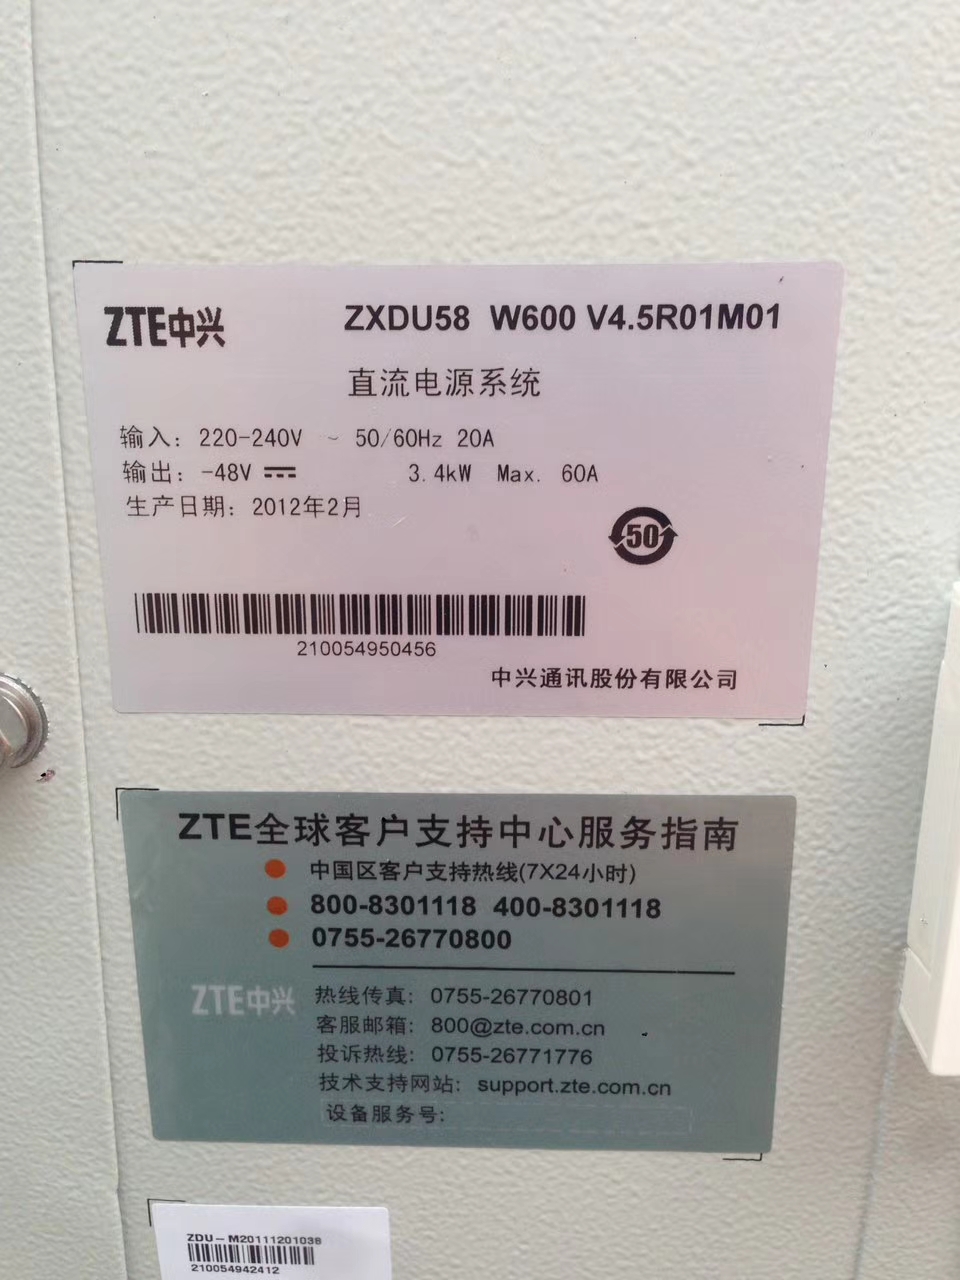 中兴ZXDU58 W600 V4.5R01M01室外壁挂式电源机柜 ZXDU58 W600中兴,ZXDU58 W600,中兴壁挂式电源